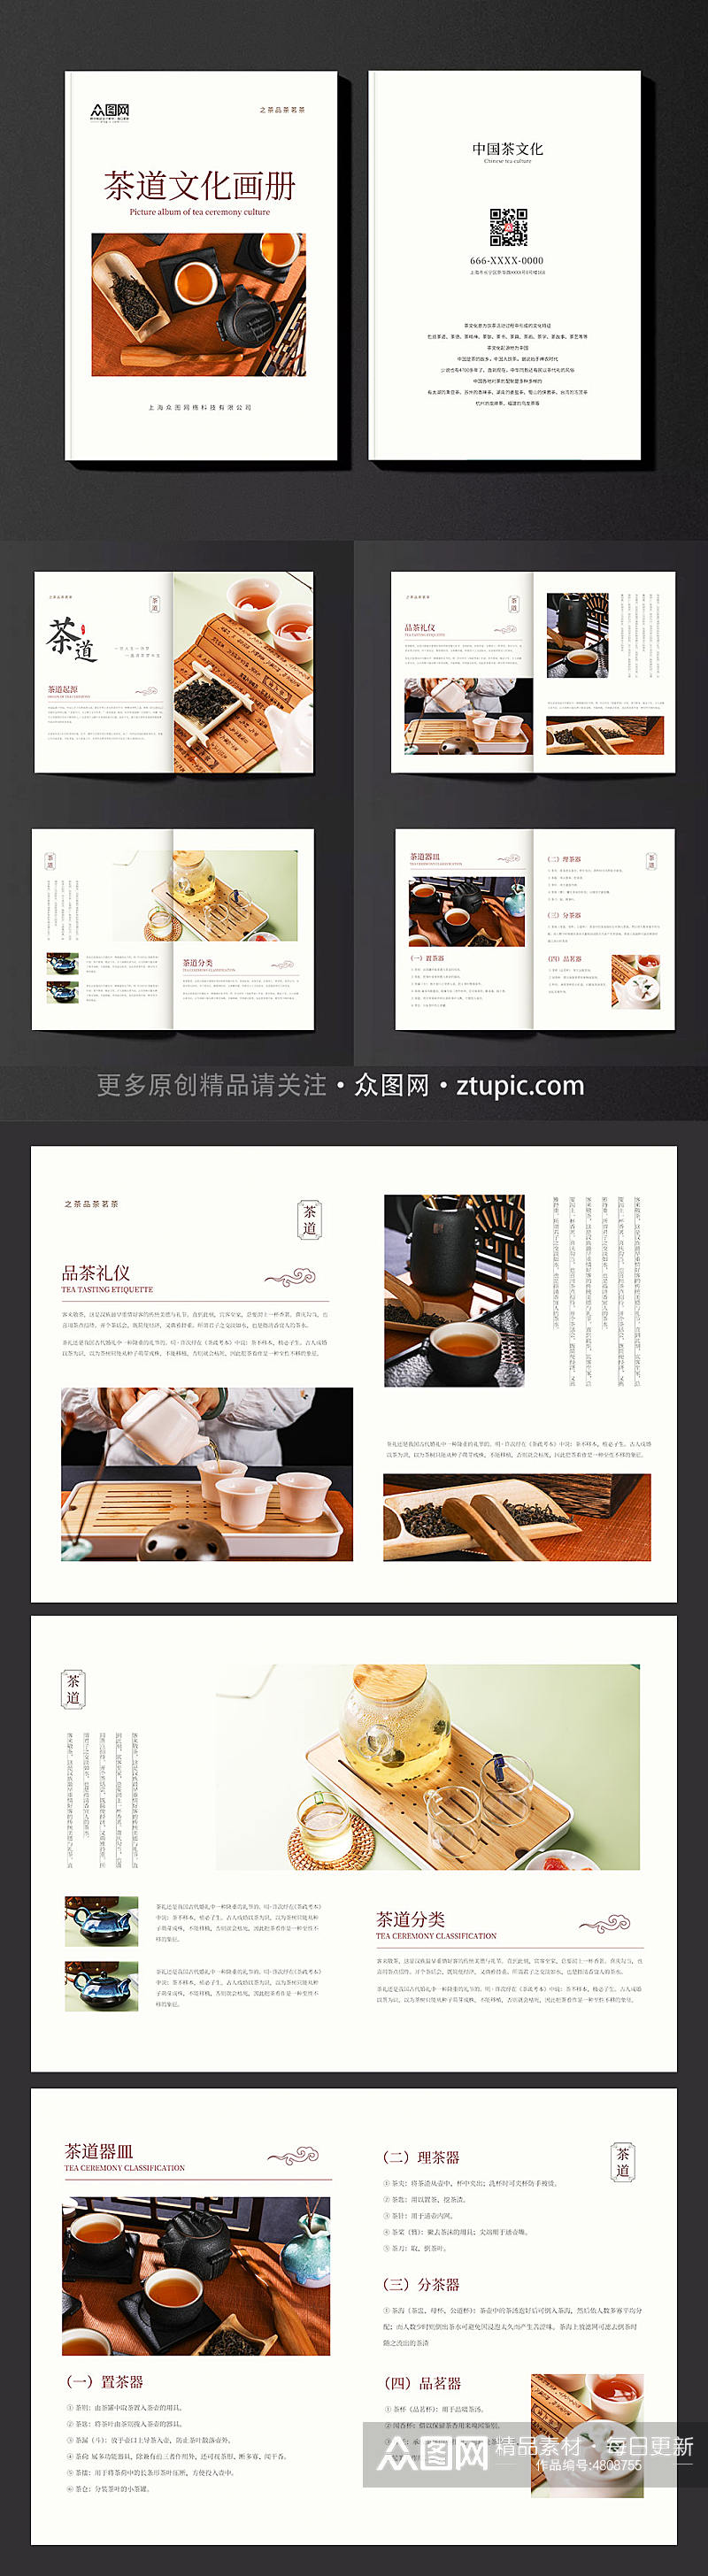 茶叶茶文化茶道宣传册画册素材